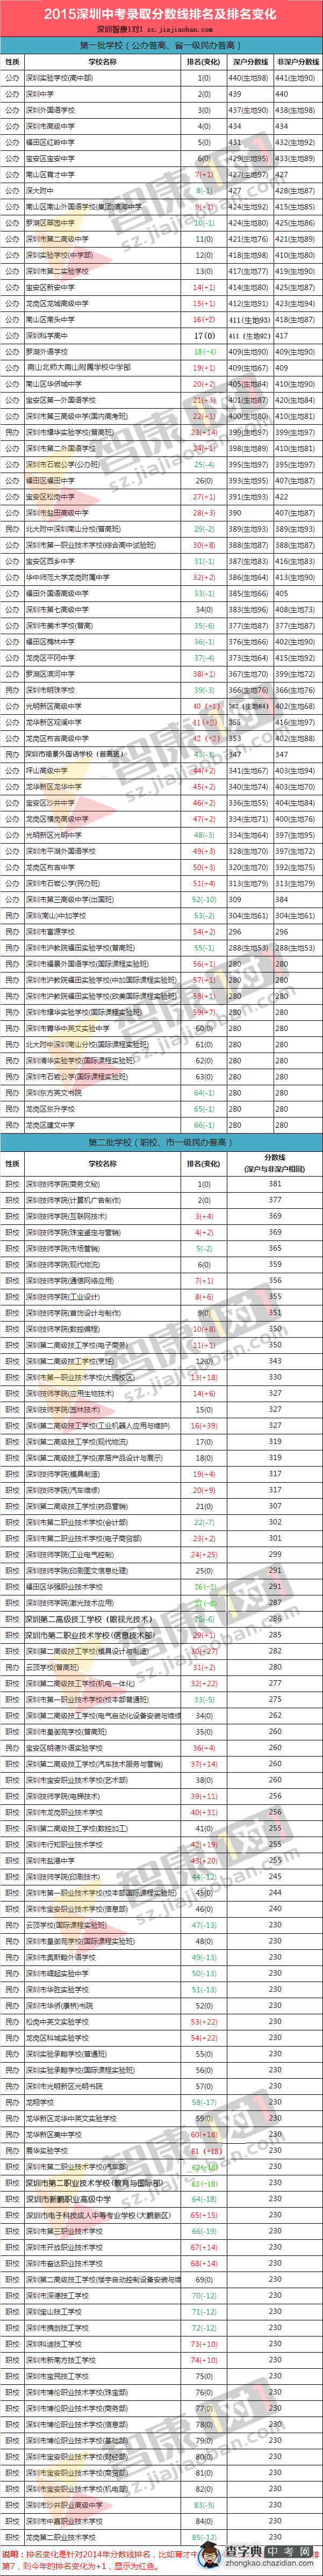 2015深圳中考录取分数线排名及排名变化1